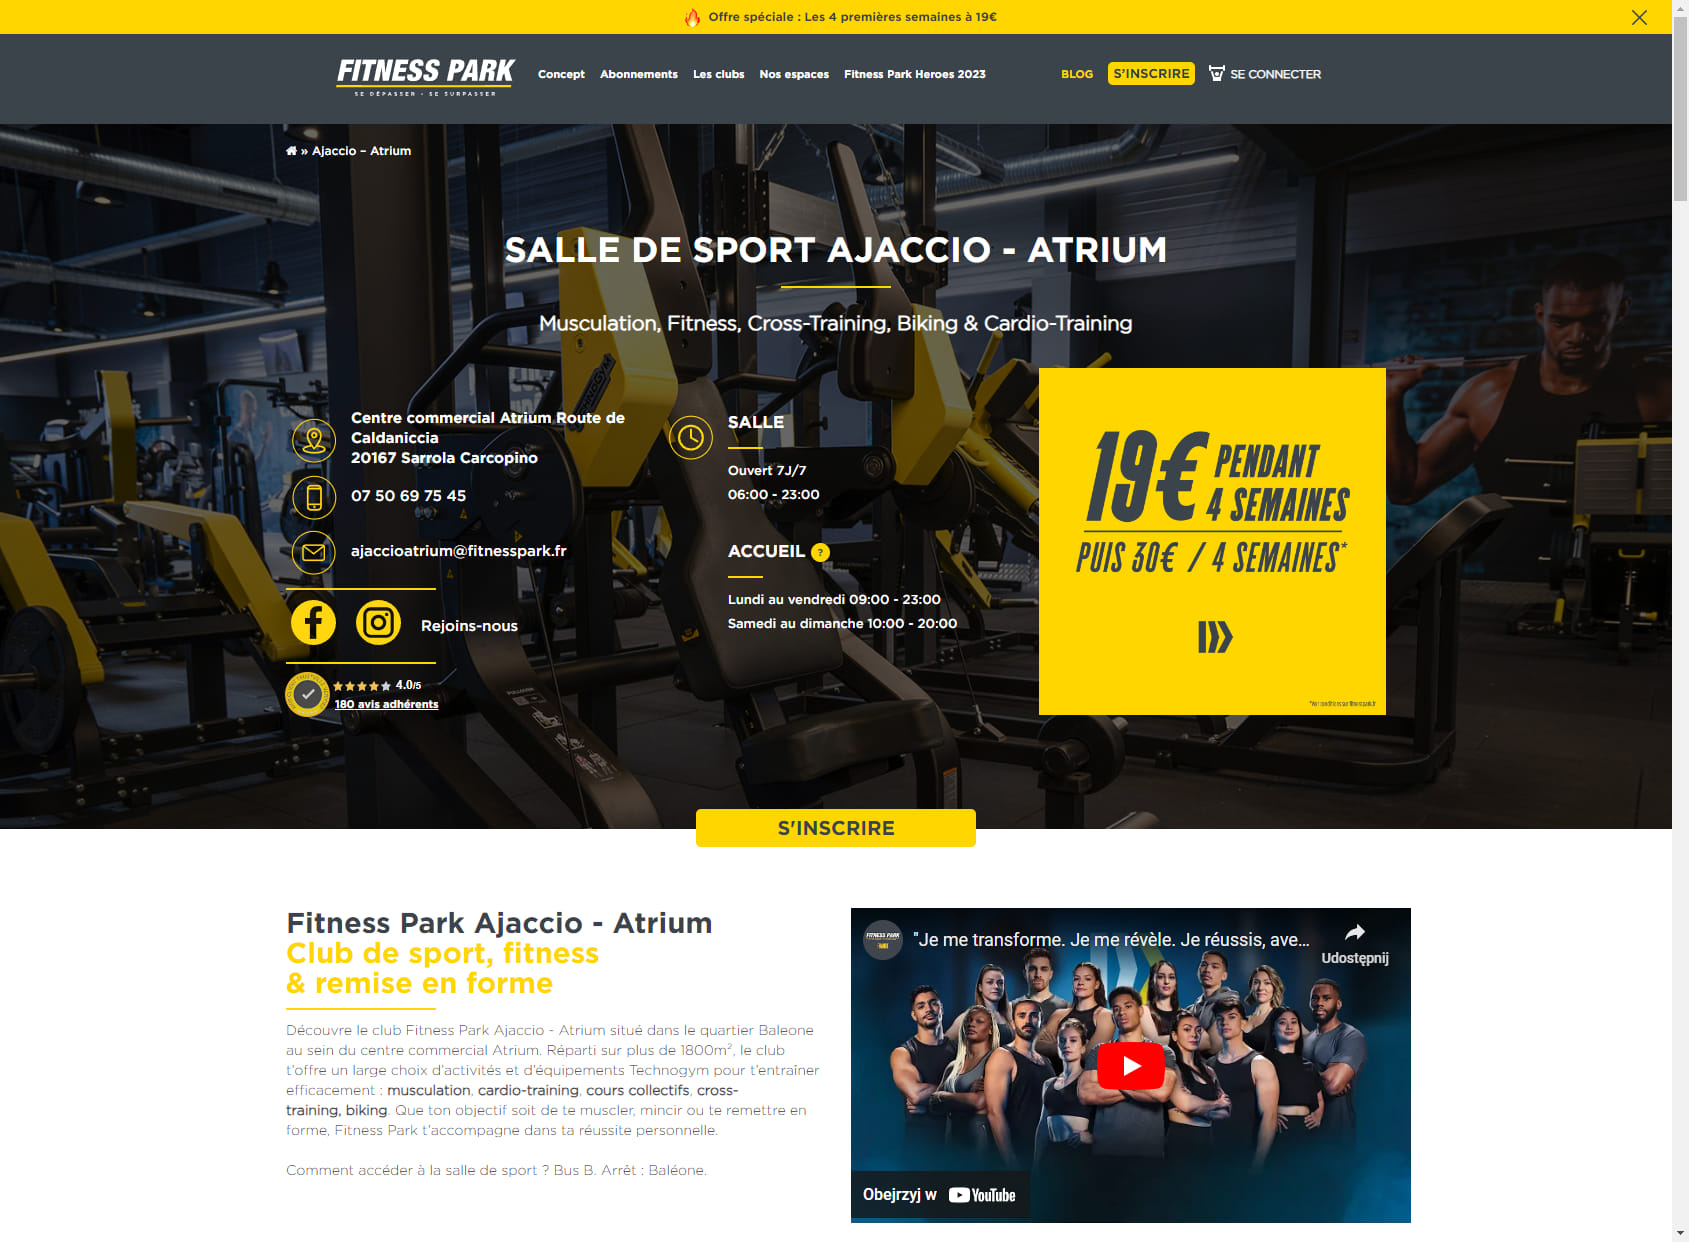 Salle de sport Ajaccio - Atrium - Fitness Park